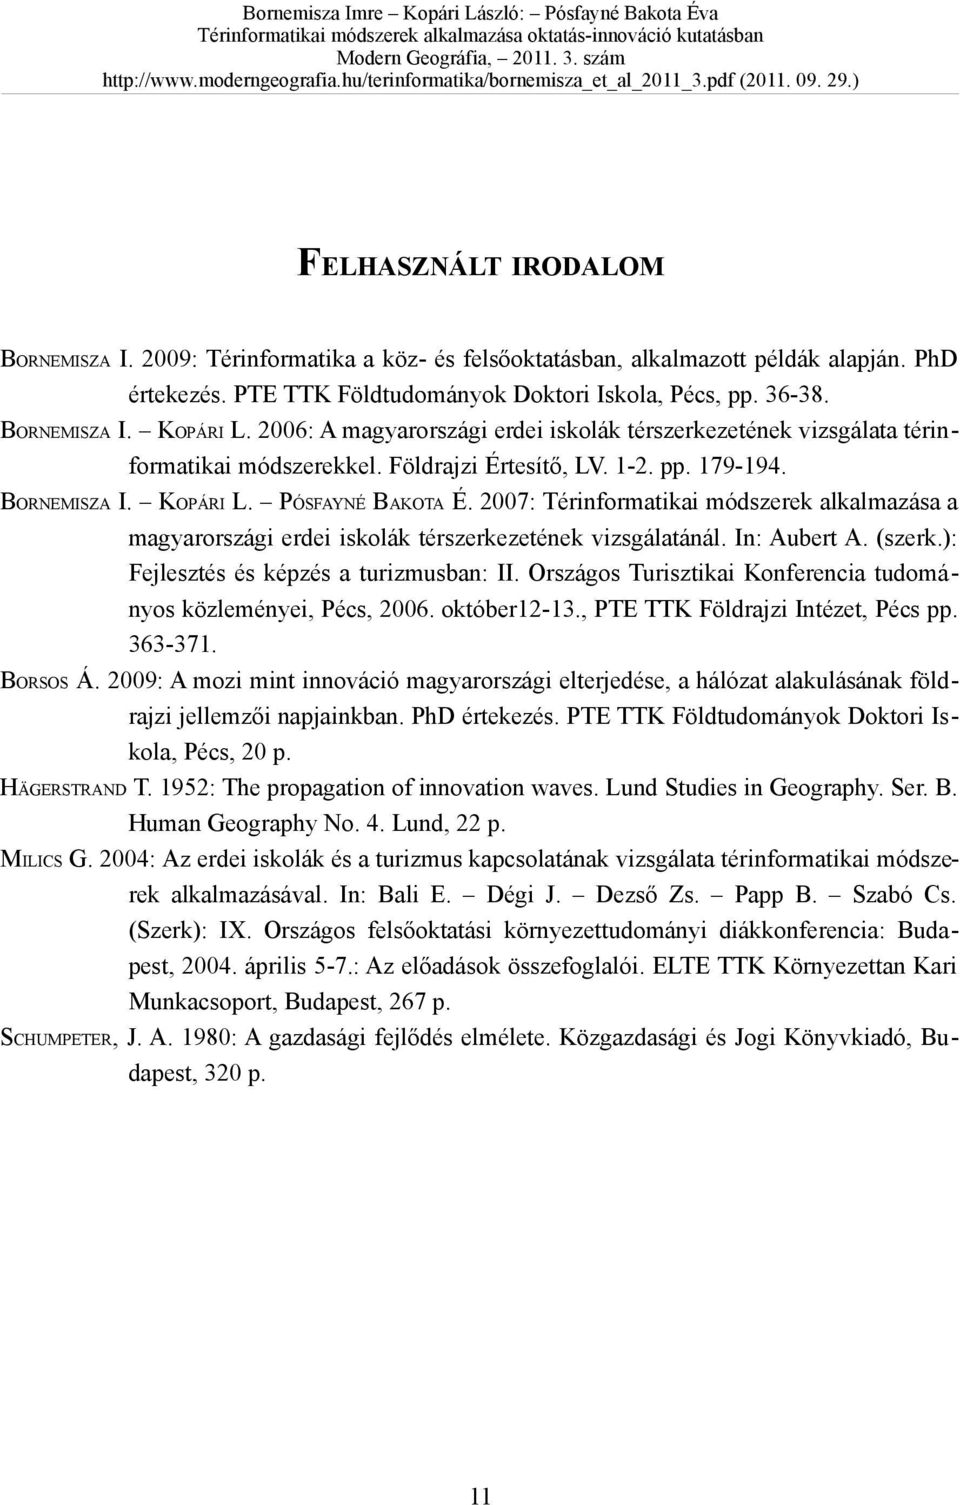 2007: Térinformatikai módszerek alkalmazása a magyarországi erdei iskolák térszerkezetének vizsgálatánál. In: Aubert A. (szerk.): Fejlesztés és képzés a turizmusban: II.